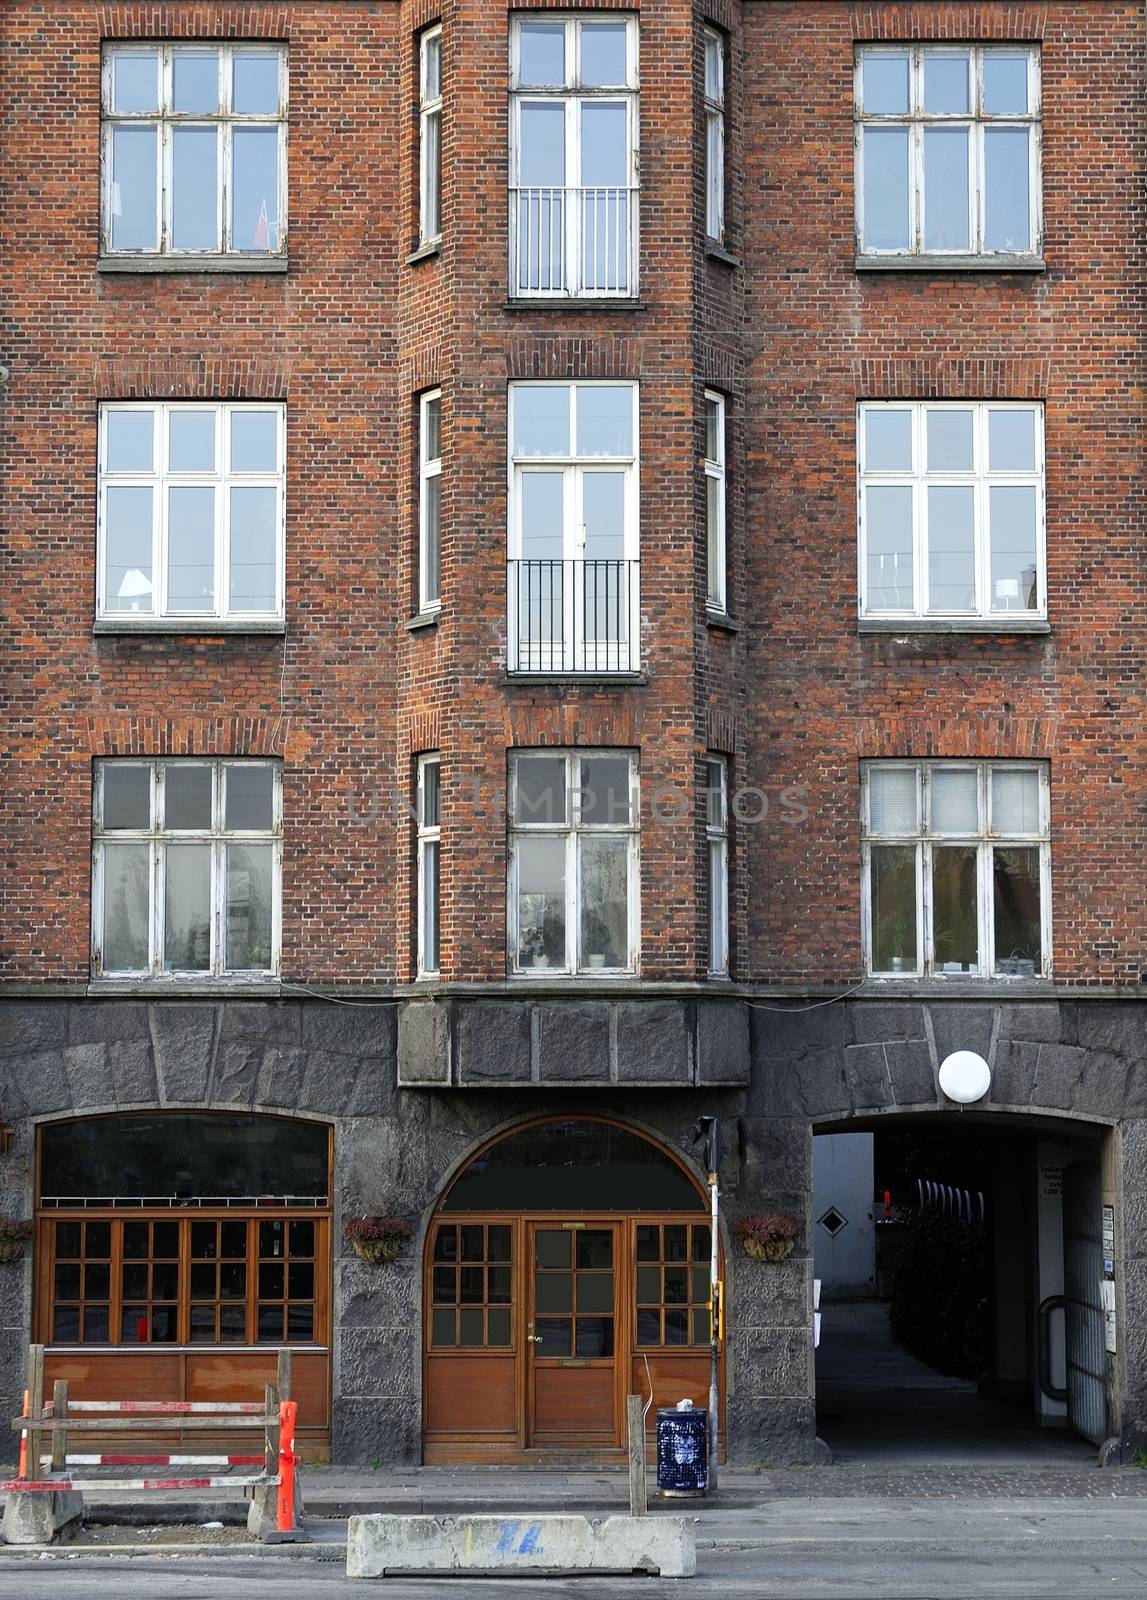 Brick buildings in Copenhagen